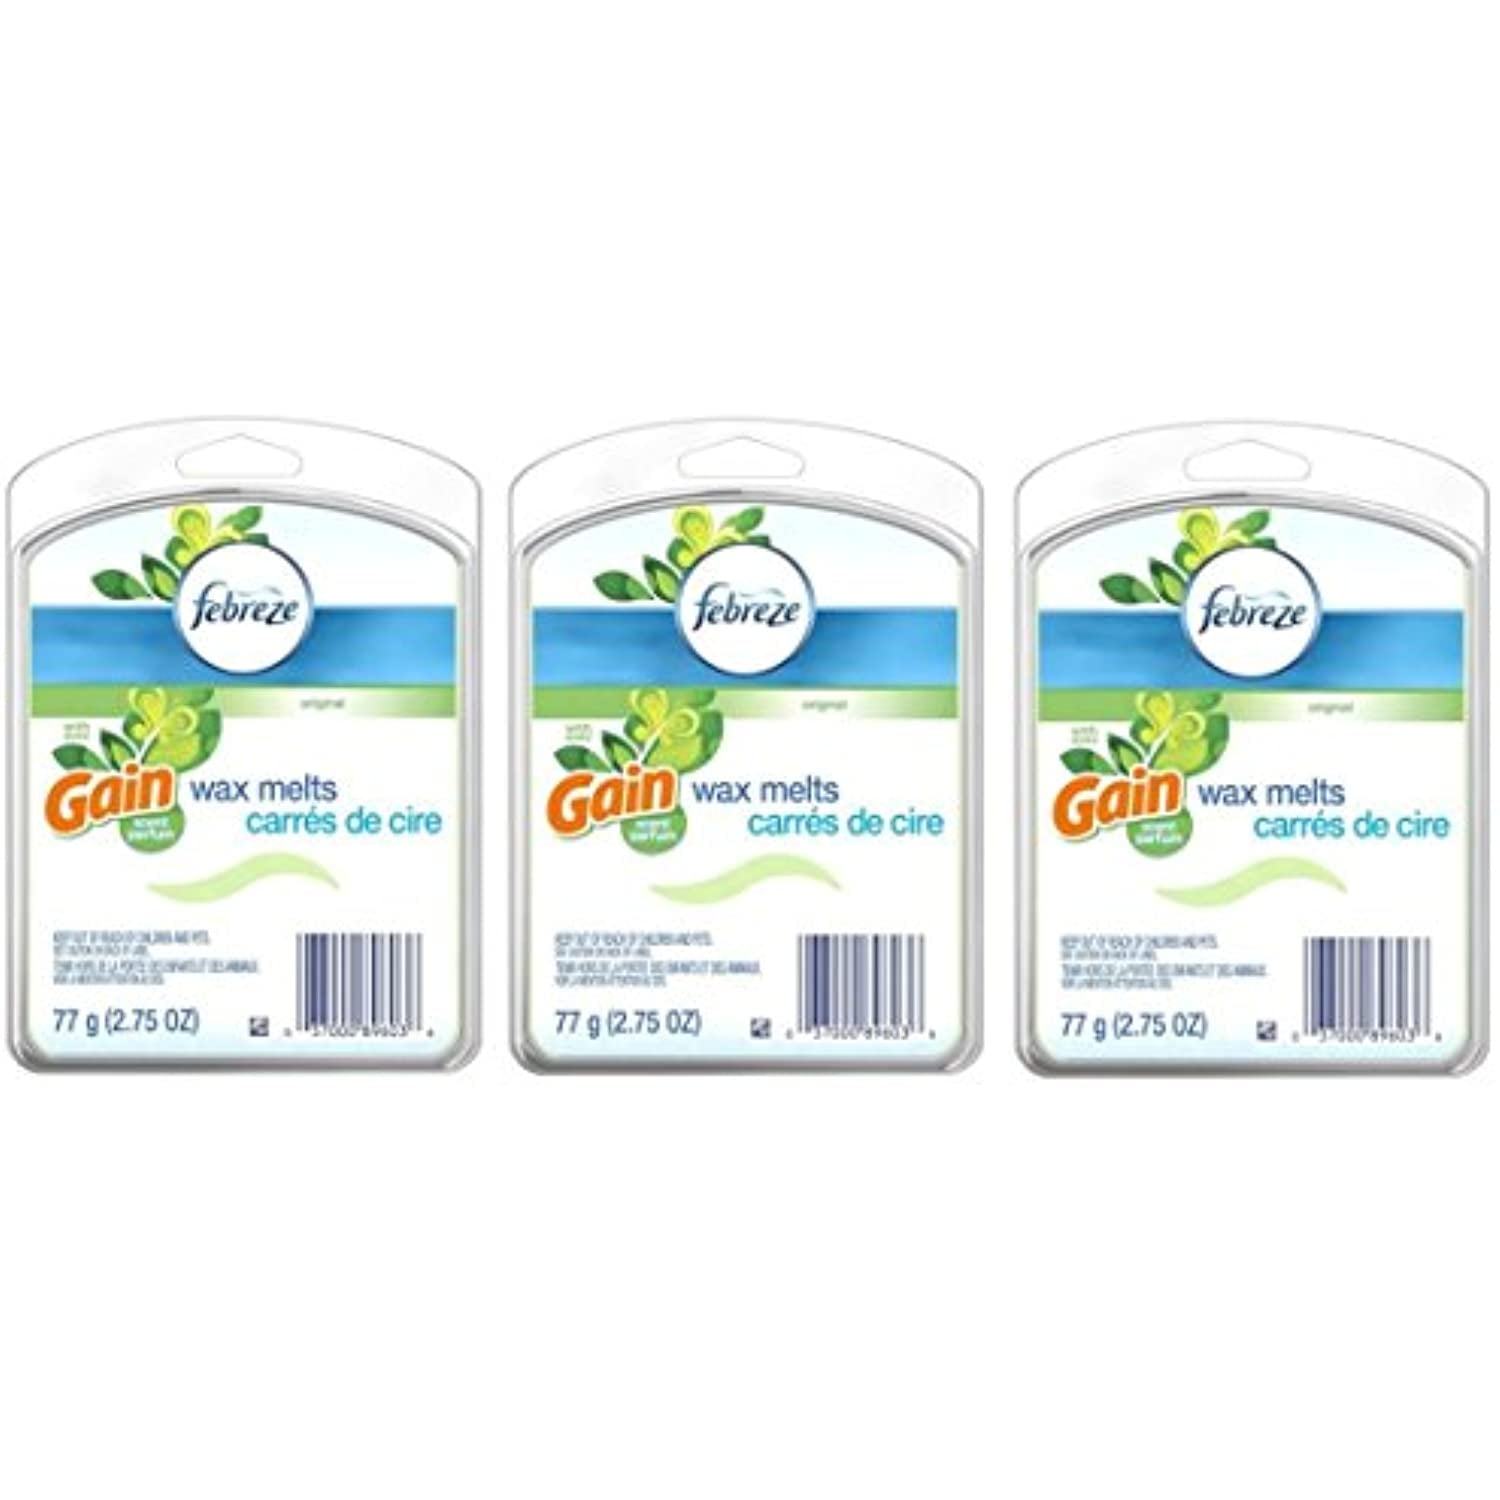 3 Packs of (6 Cubes) Febreze Original Gain Scent w/ avec (Green) Wax Melts Air Freshener 2.75 Ounces Each